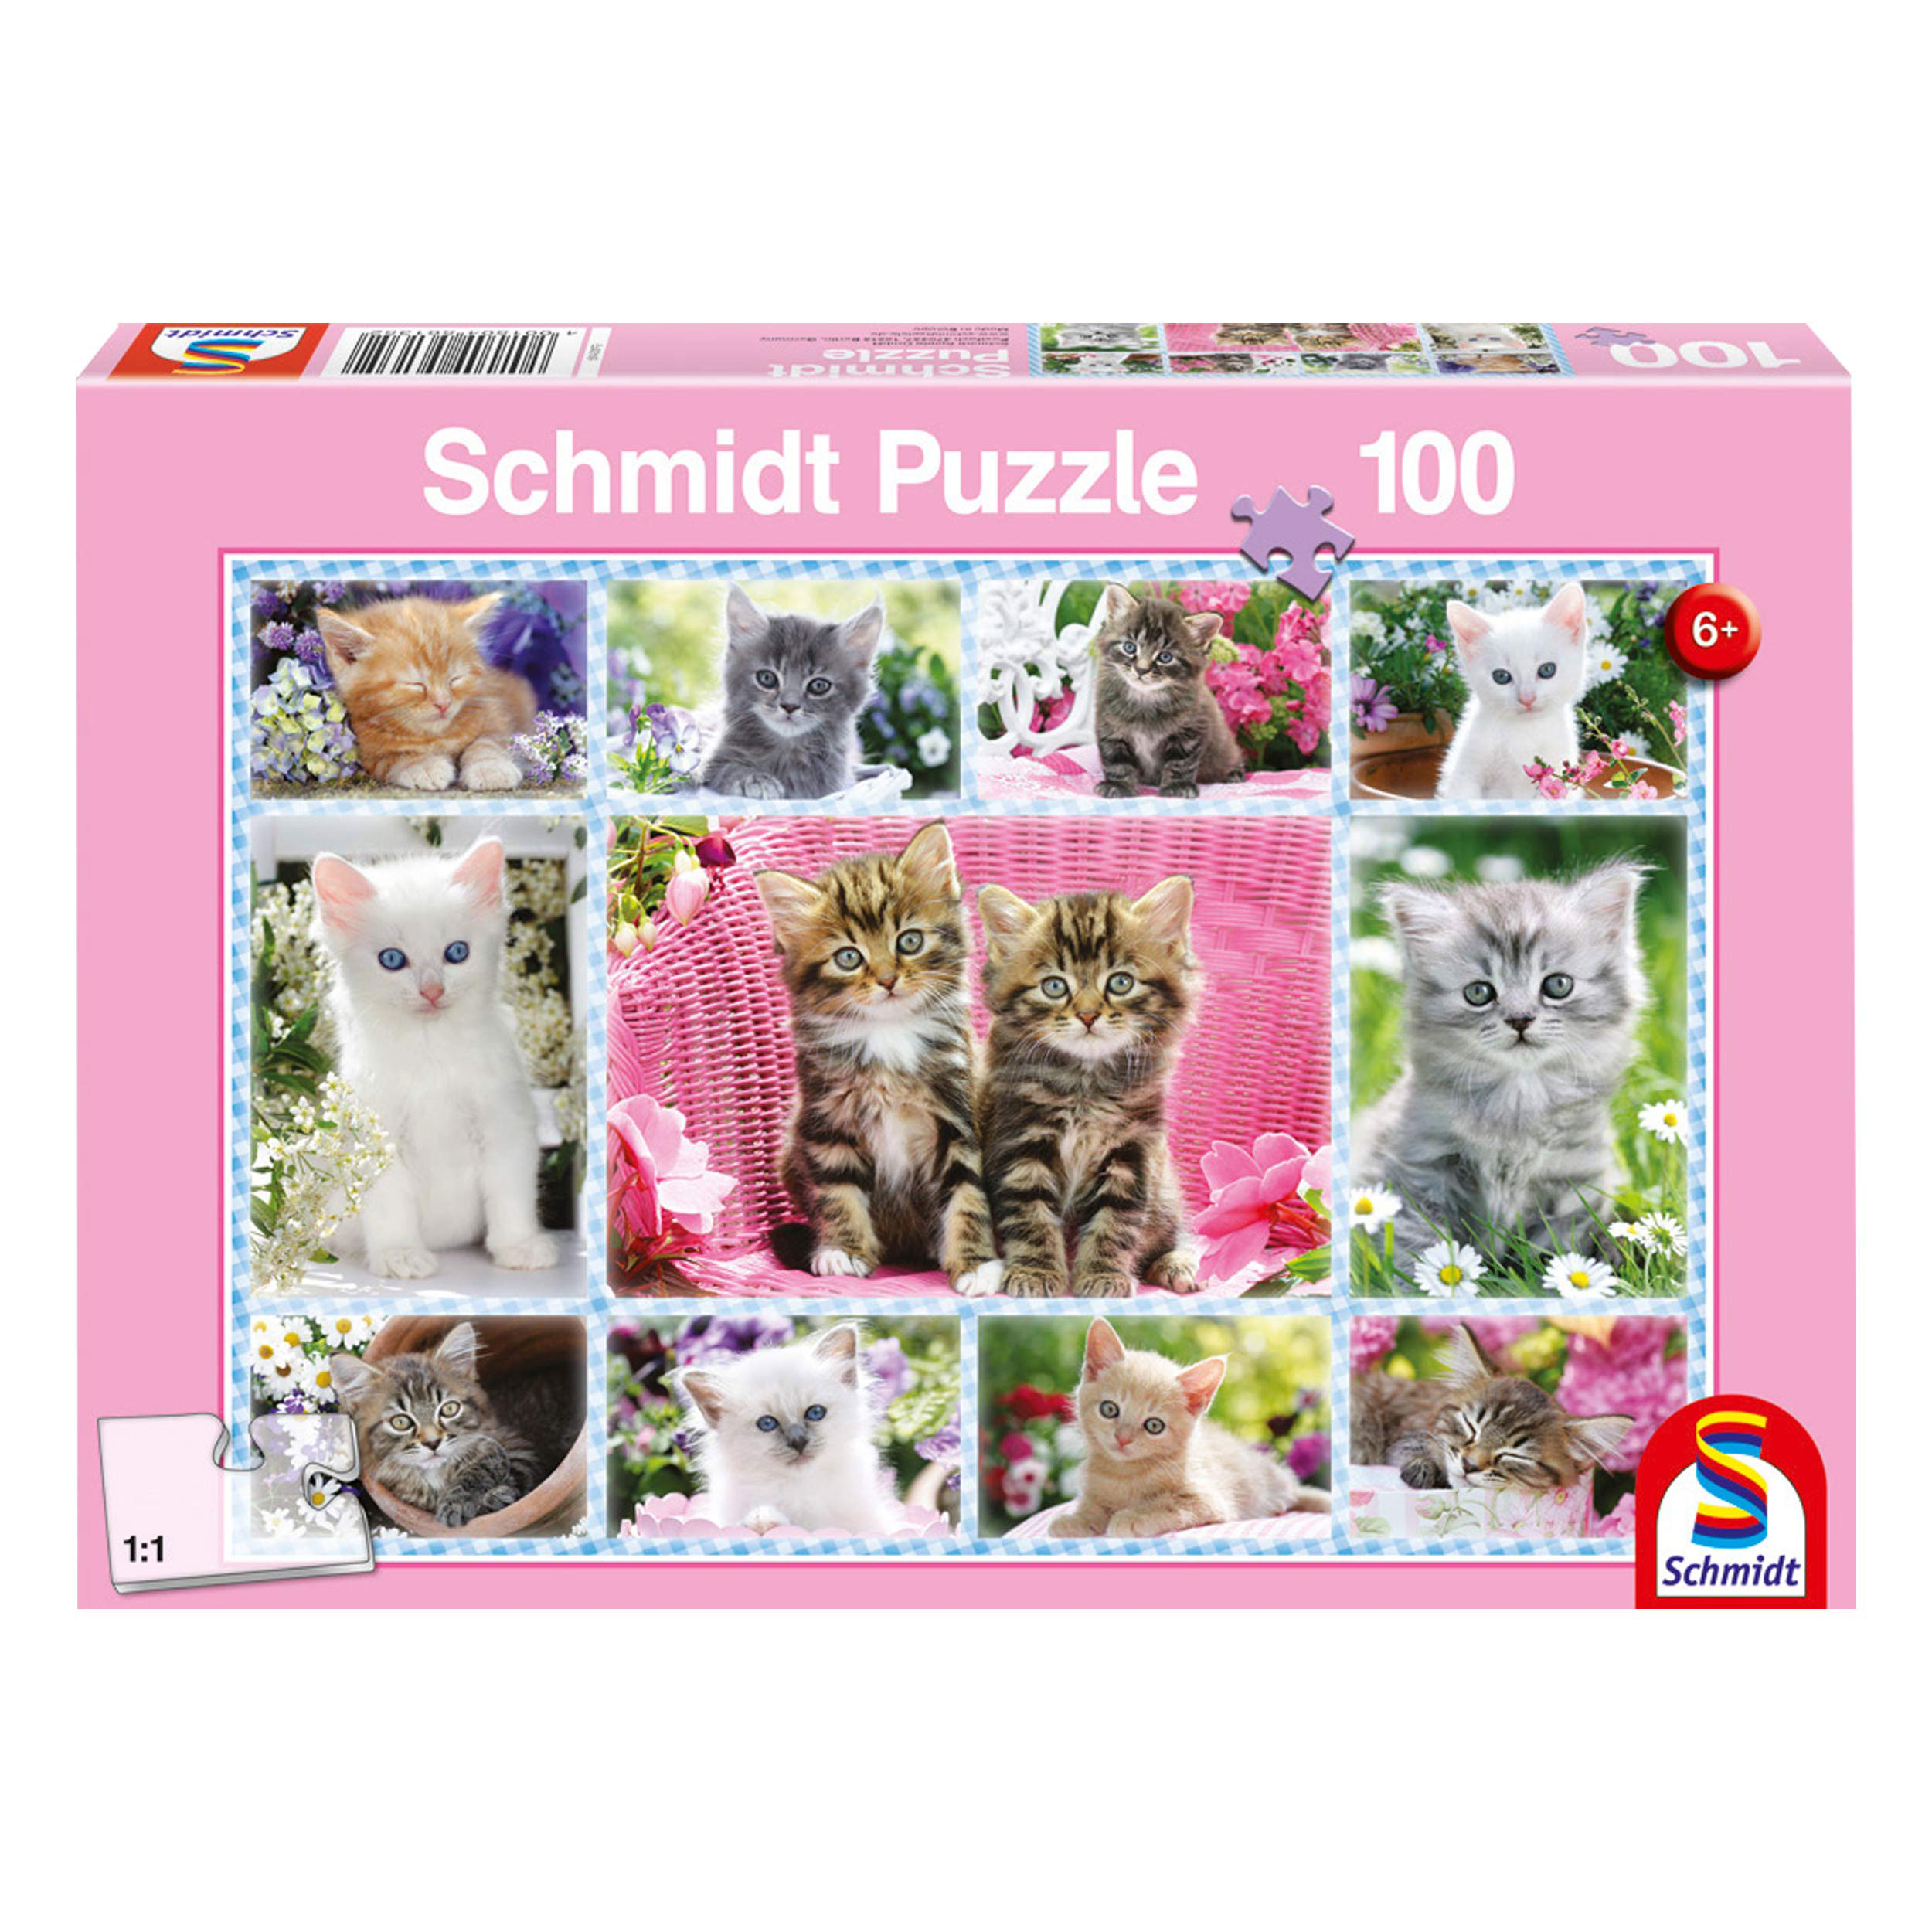 100 SCHMIDT Puzzle Katzenbabys Puzzle SPIELE Teile -